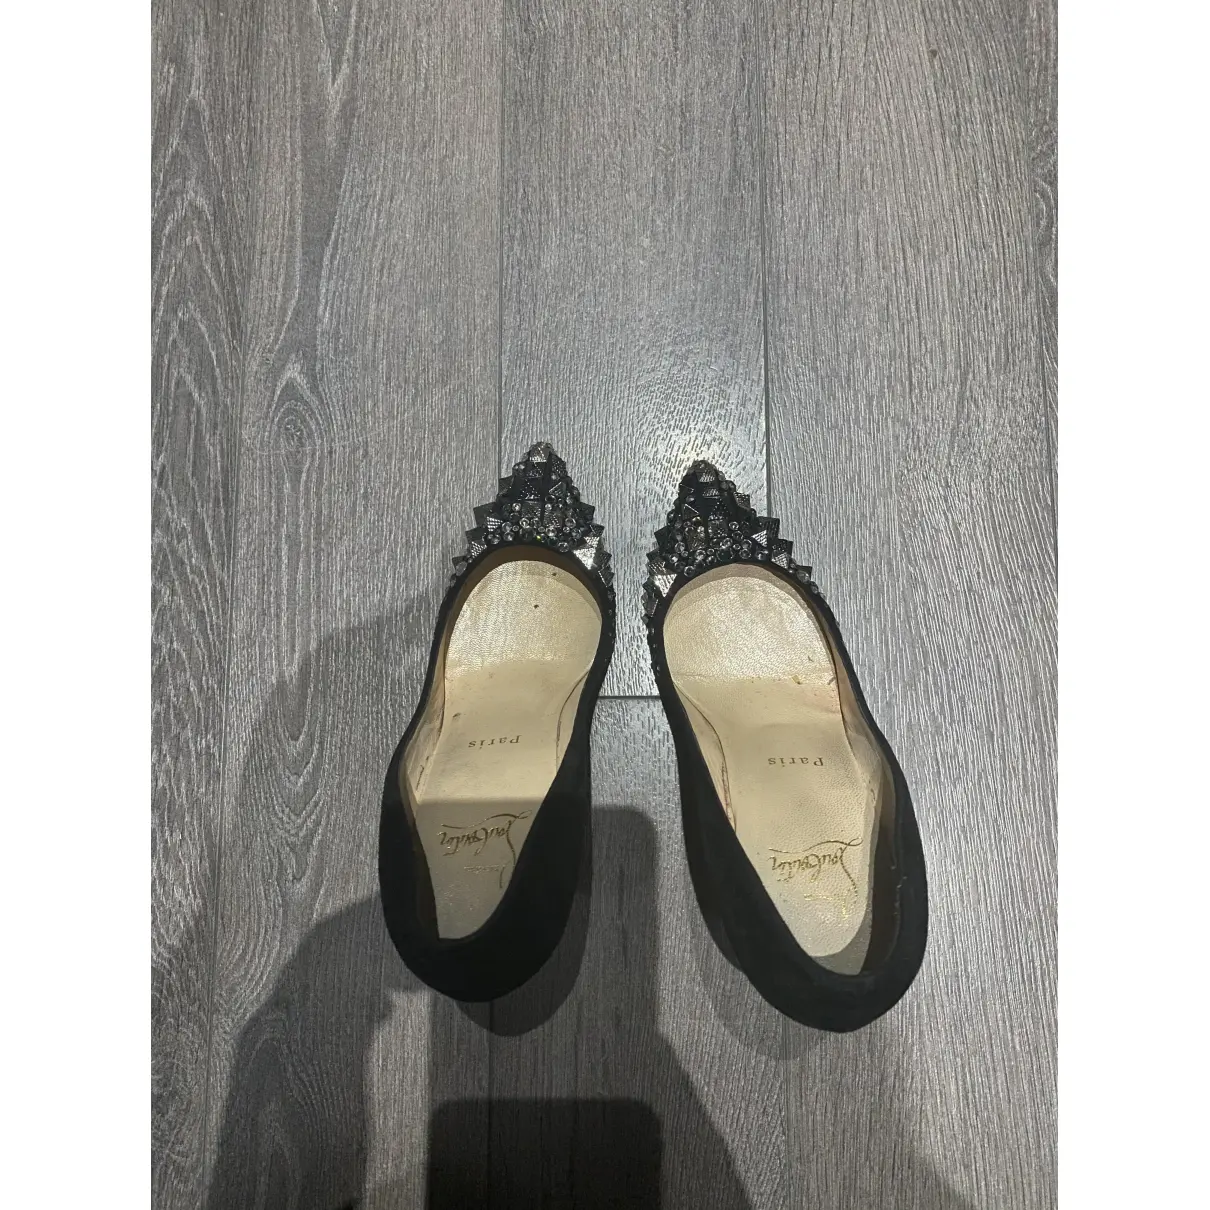 Buy Christian Louboutin Degrastrass heels online